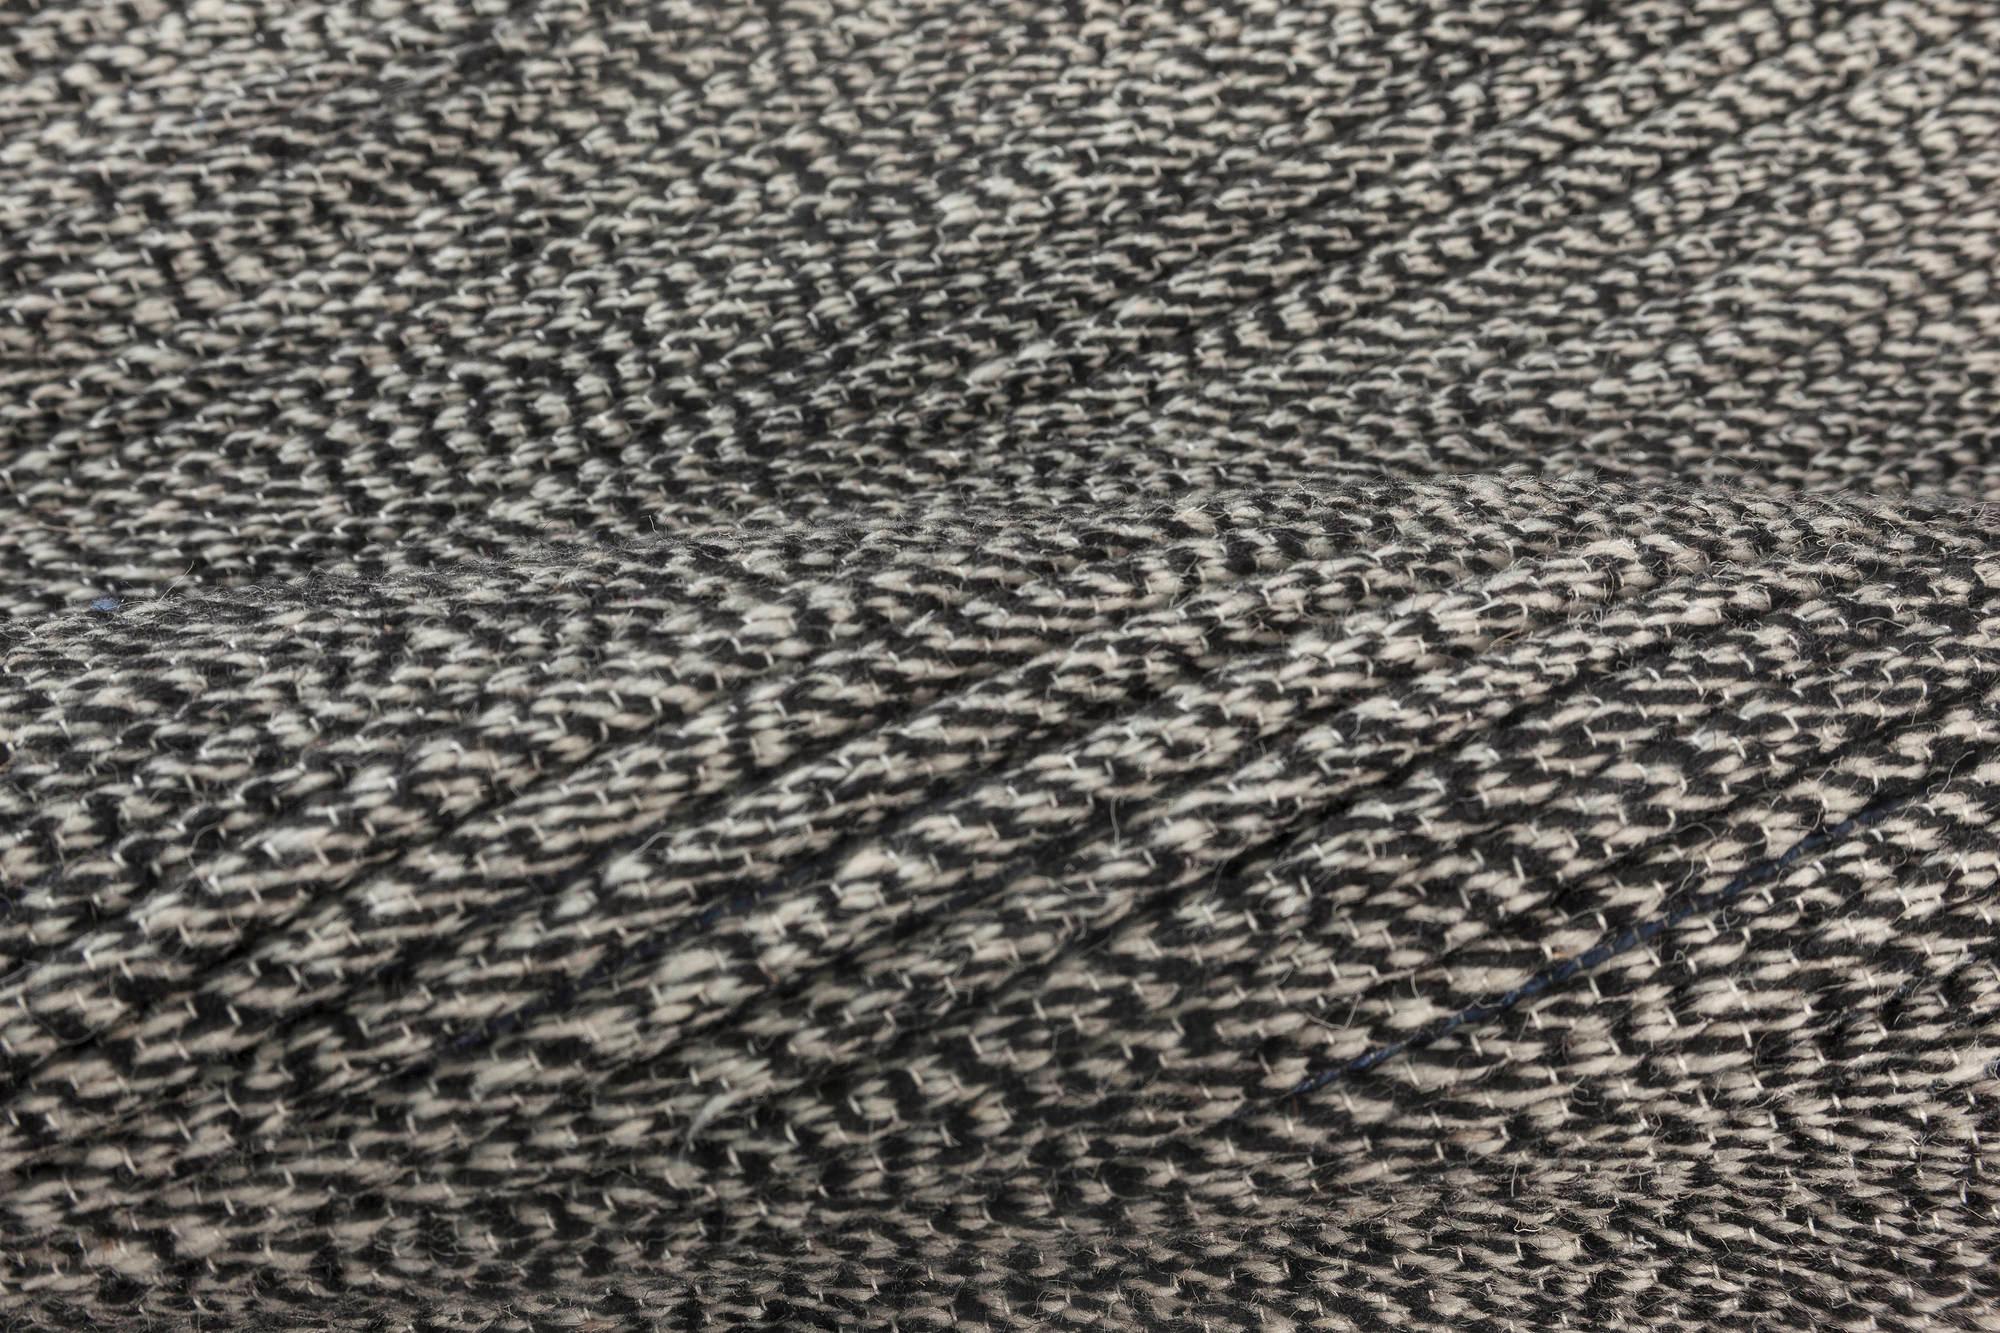 Tapis en laine gris de la Collection Bauer, fabriqué à la main par Doris Leslie Blau.
Taille : 6'7